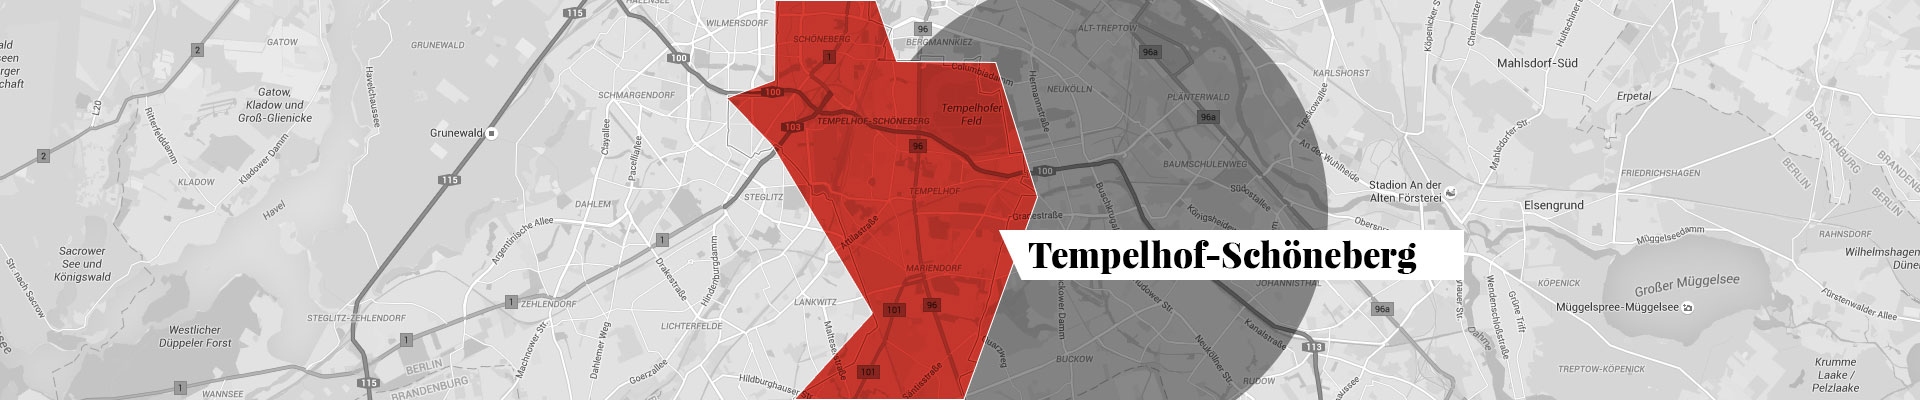 Tempelhof-Schöneberg map